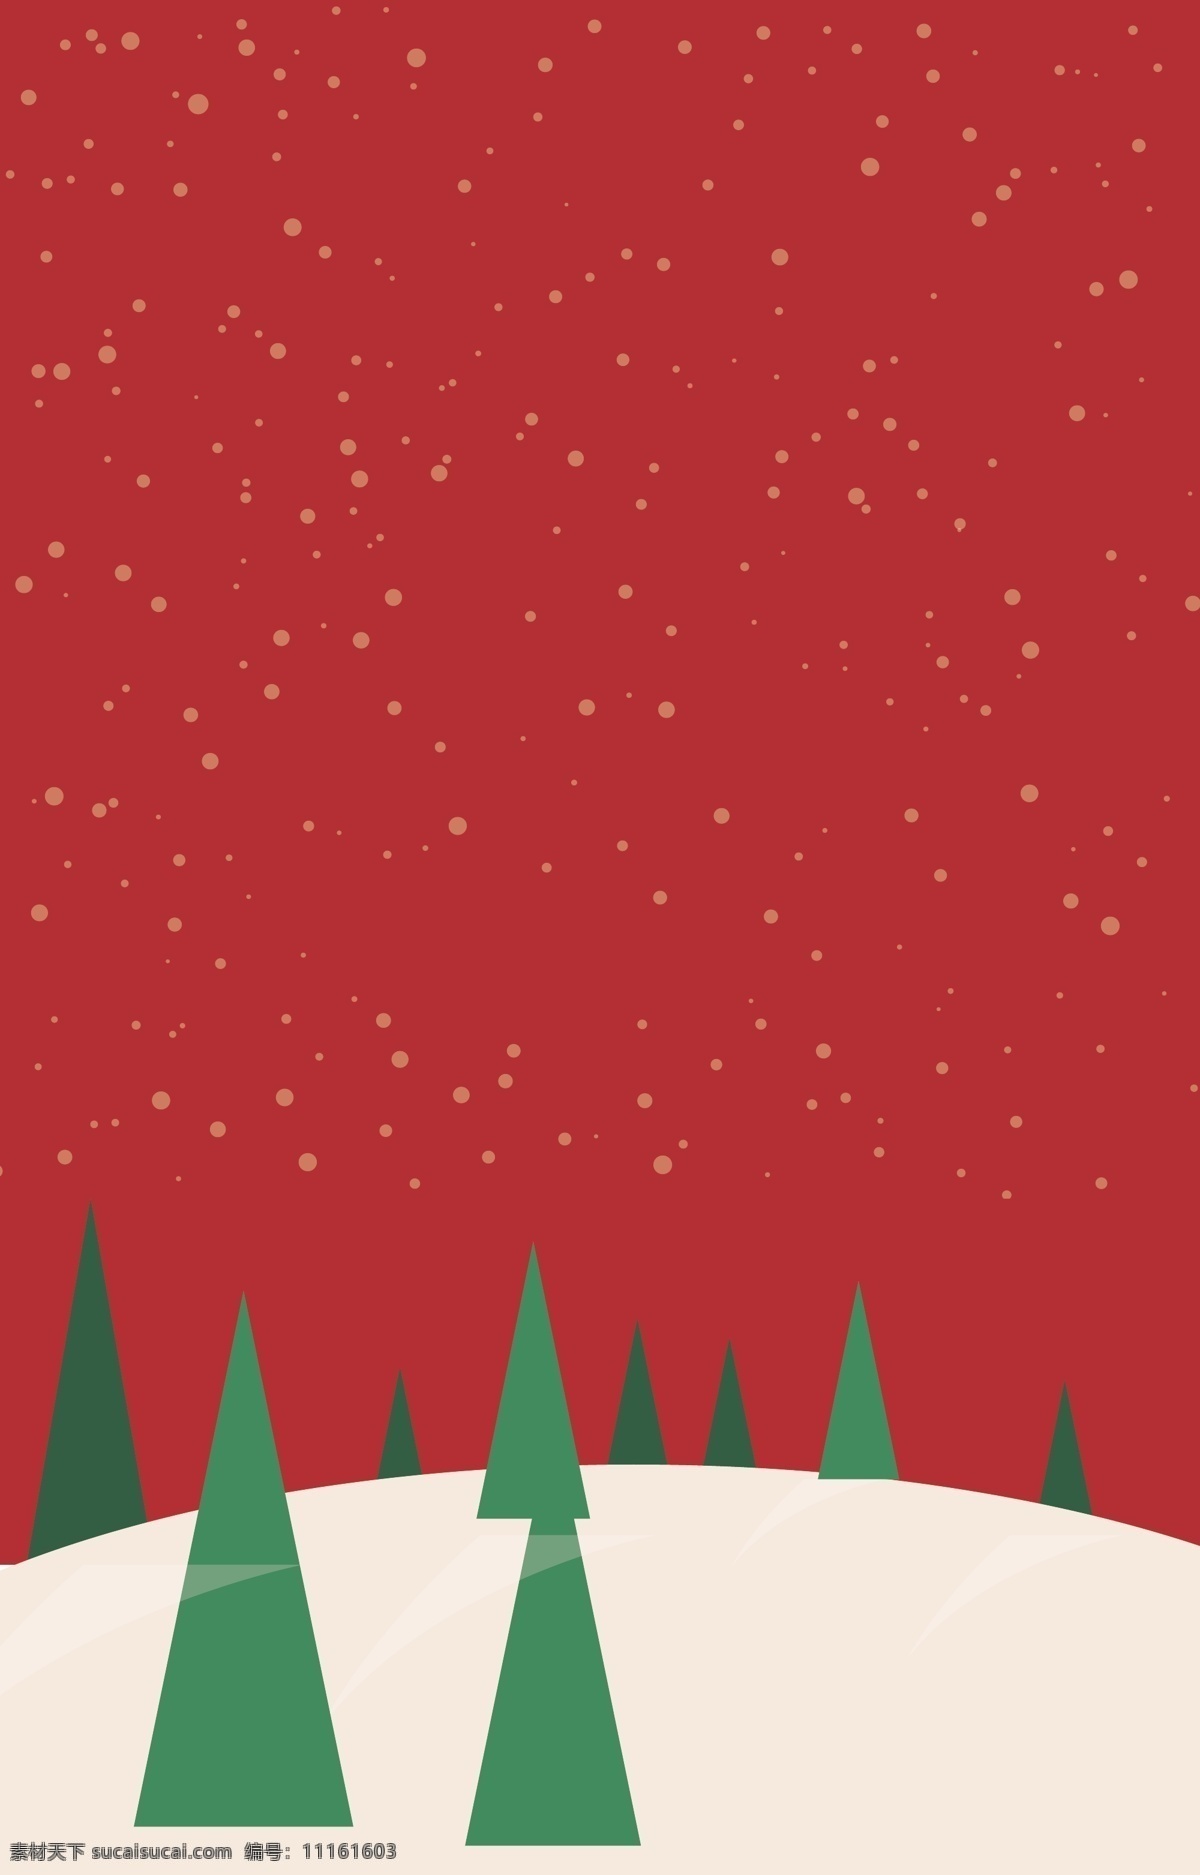 山丘 上 绿树 背景 红色 卡通 白雪 海报 矢量素材 高清 设计图 开心